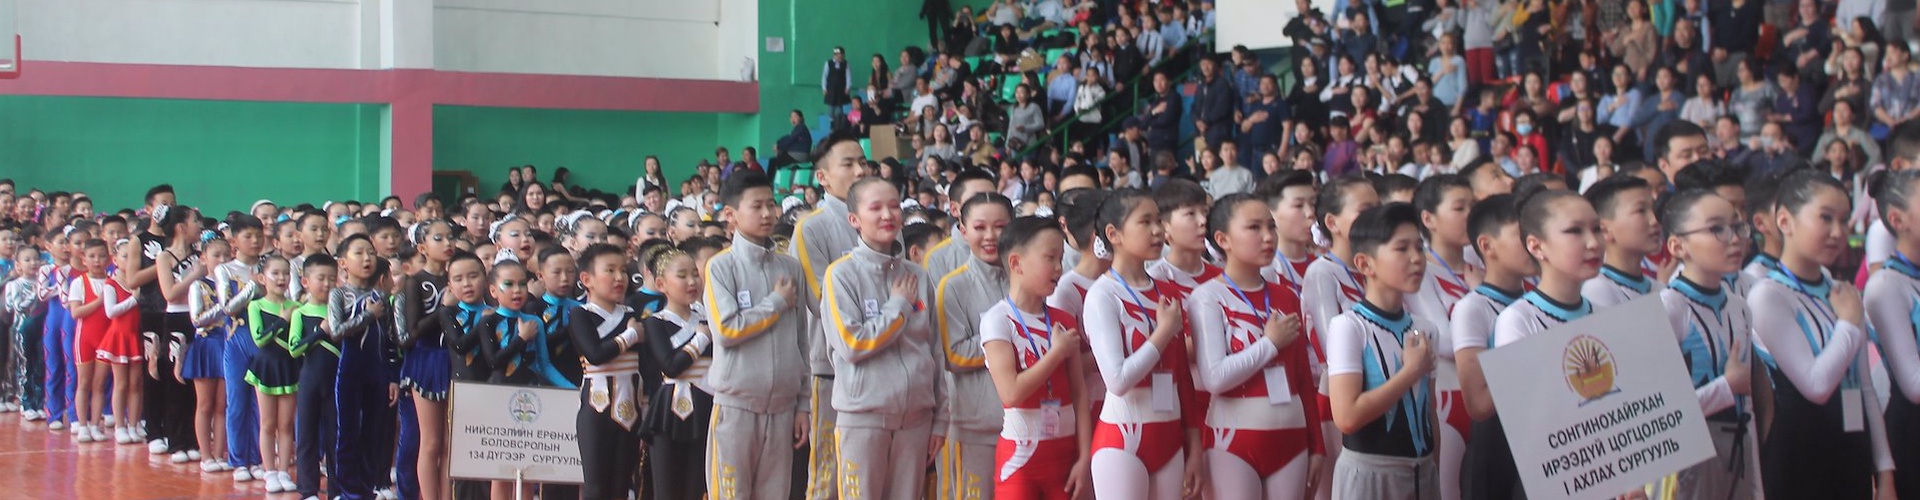 Улаанбаатар хотын аварга шалгаруулах Ерөнхий боловсролын сургуулийн сурагчдын уран хөдөлгөөнт гимнастикийн тэмцээн